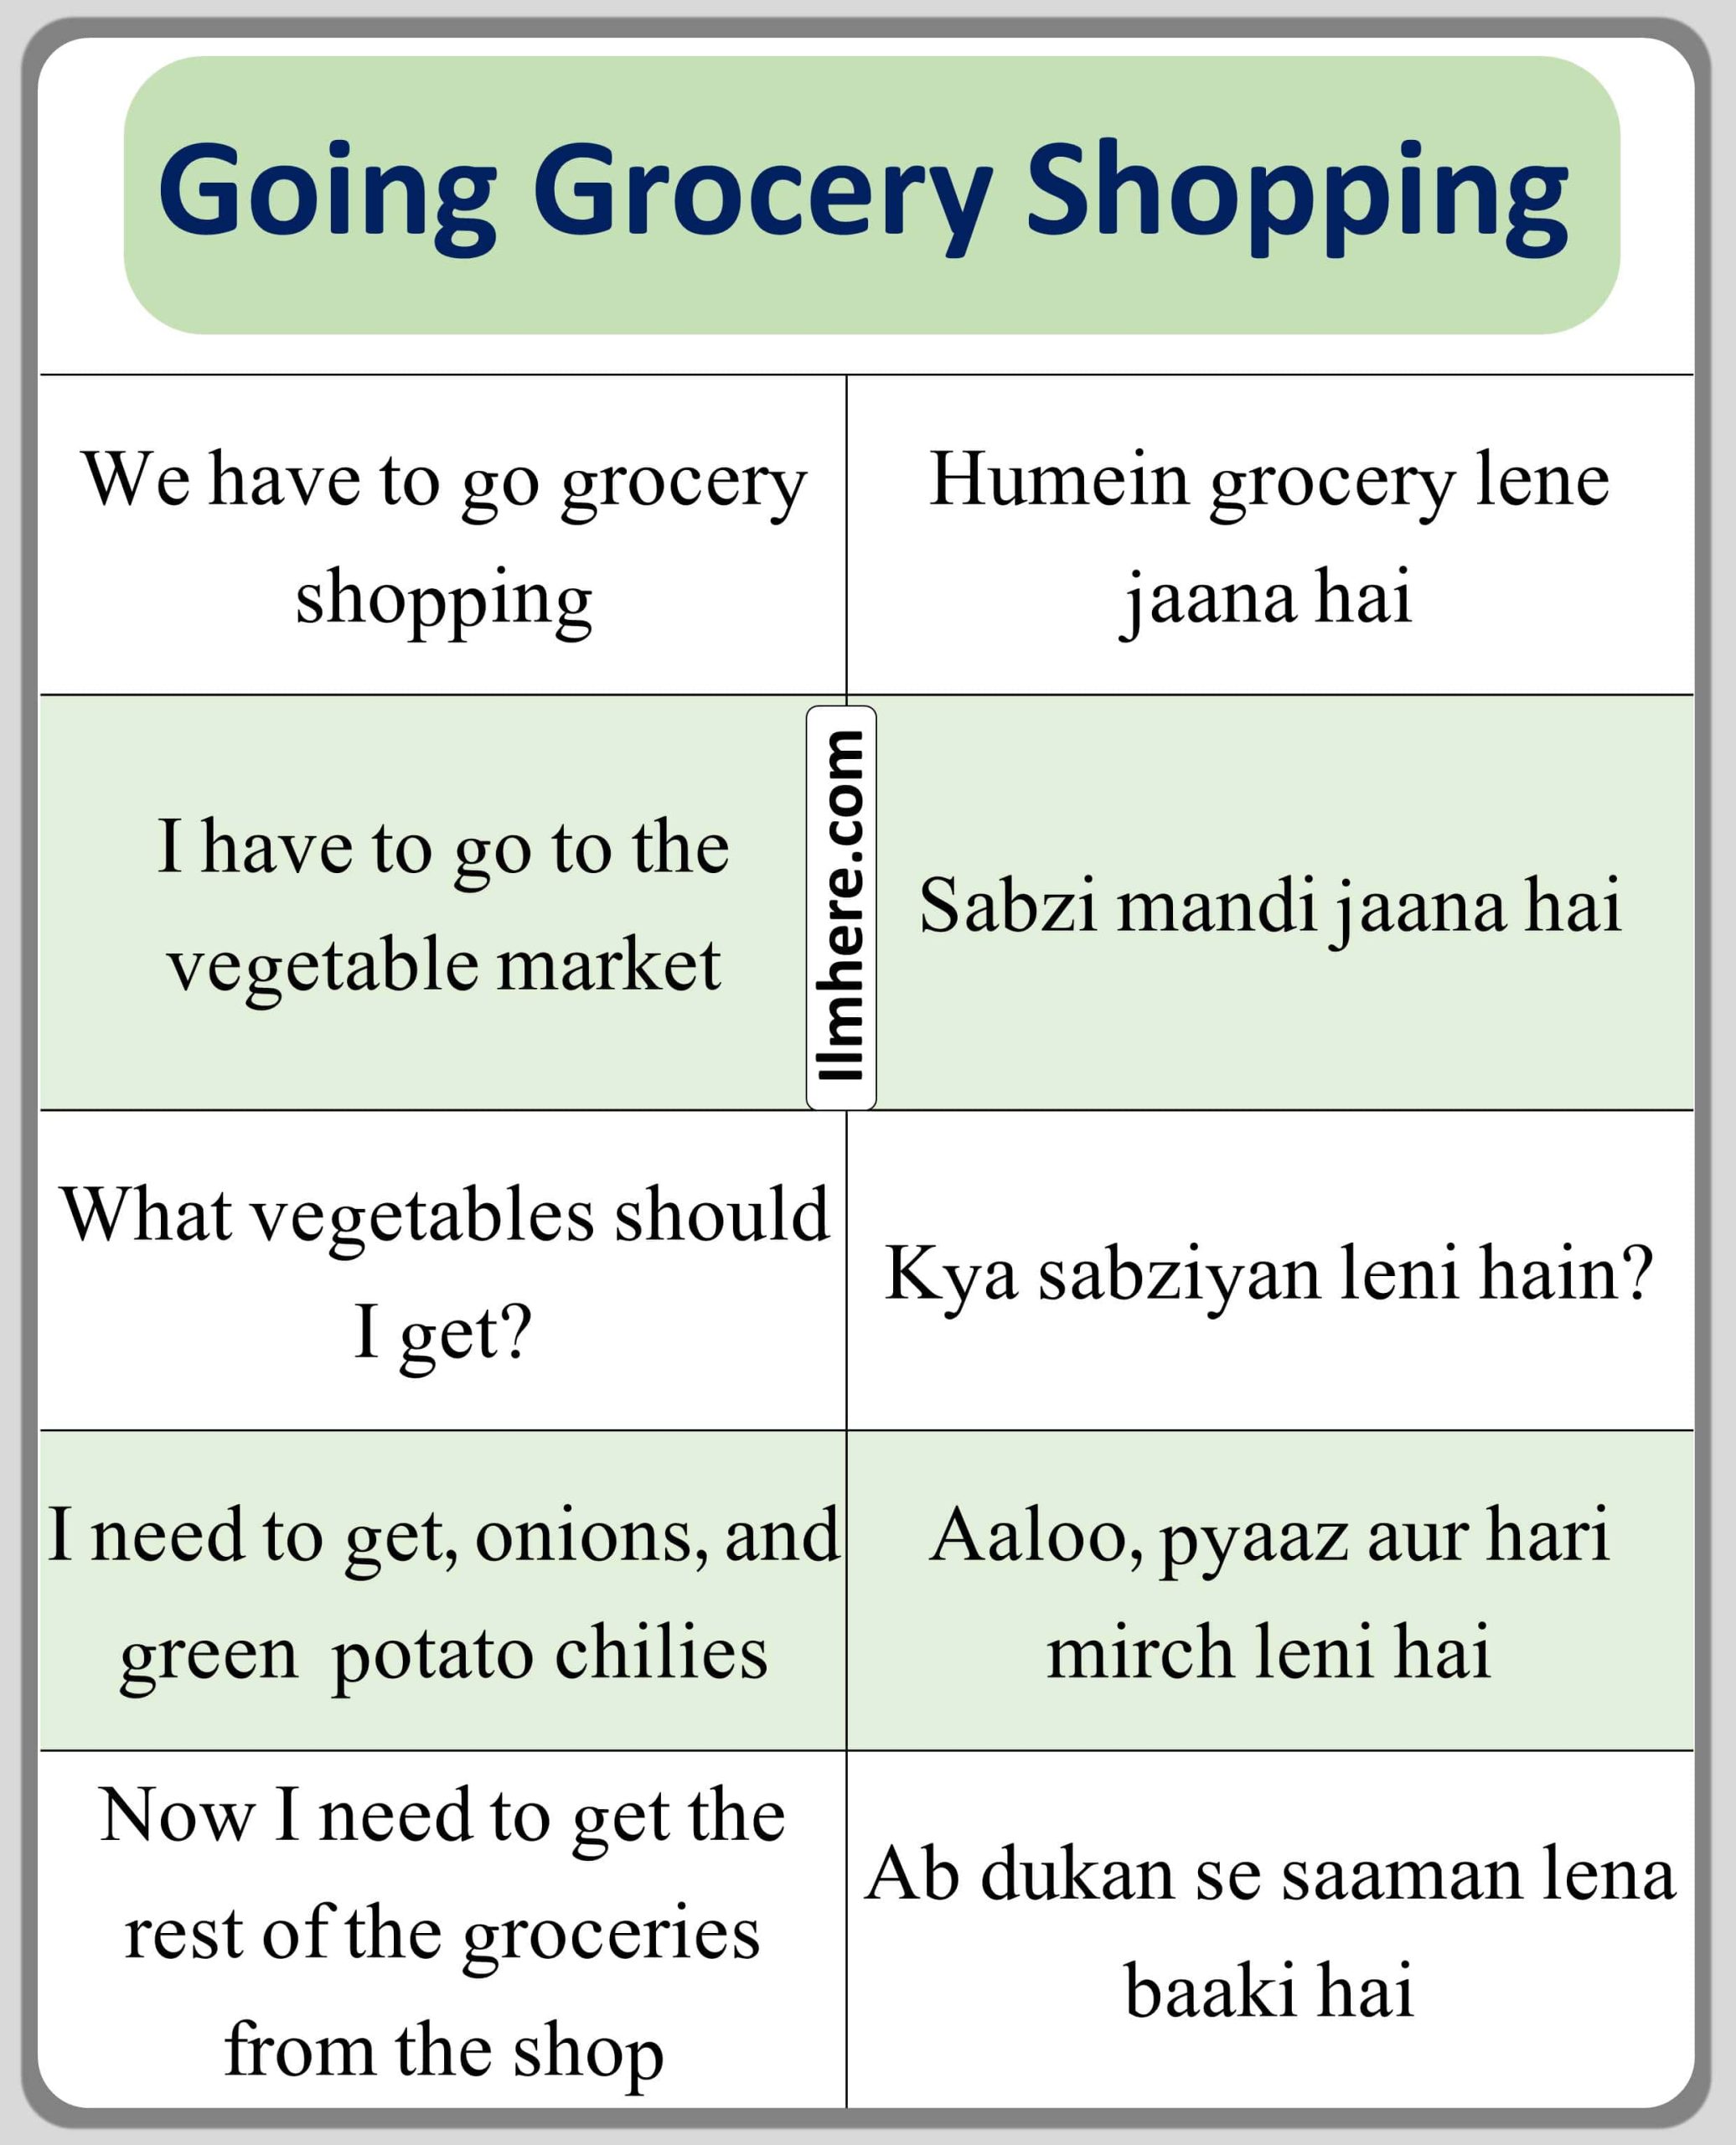 Going Grocery Shopping English to Urdu sentences